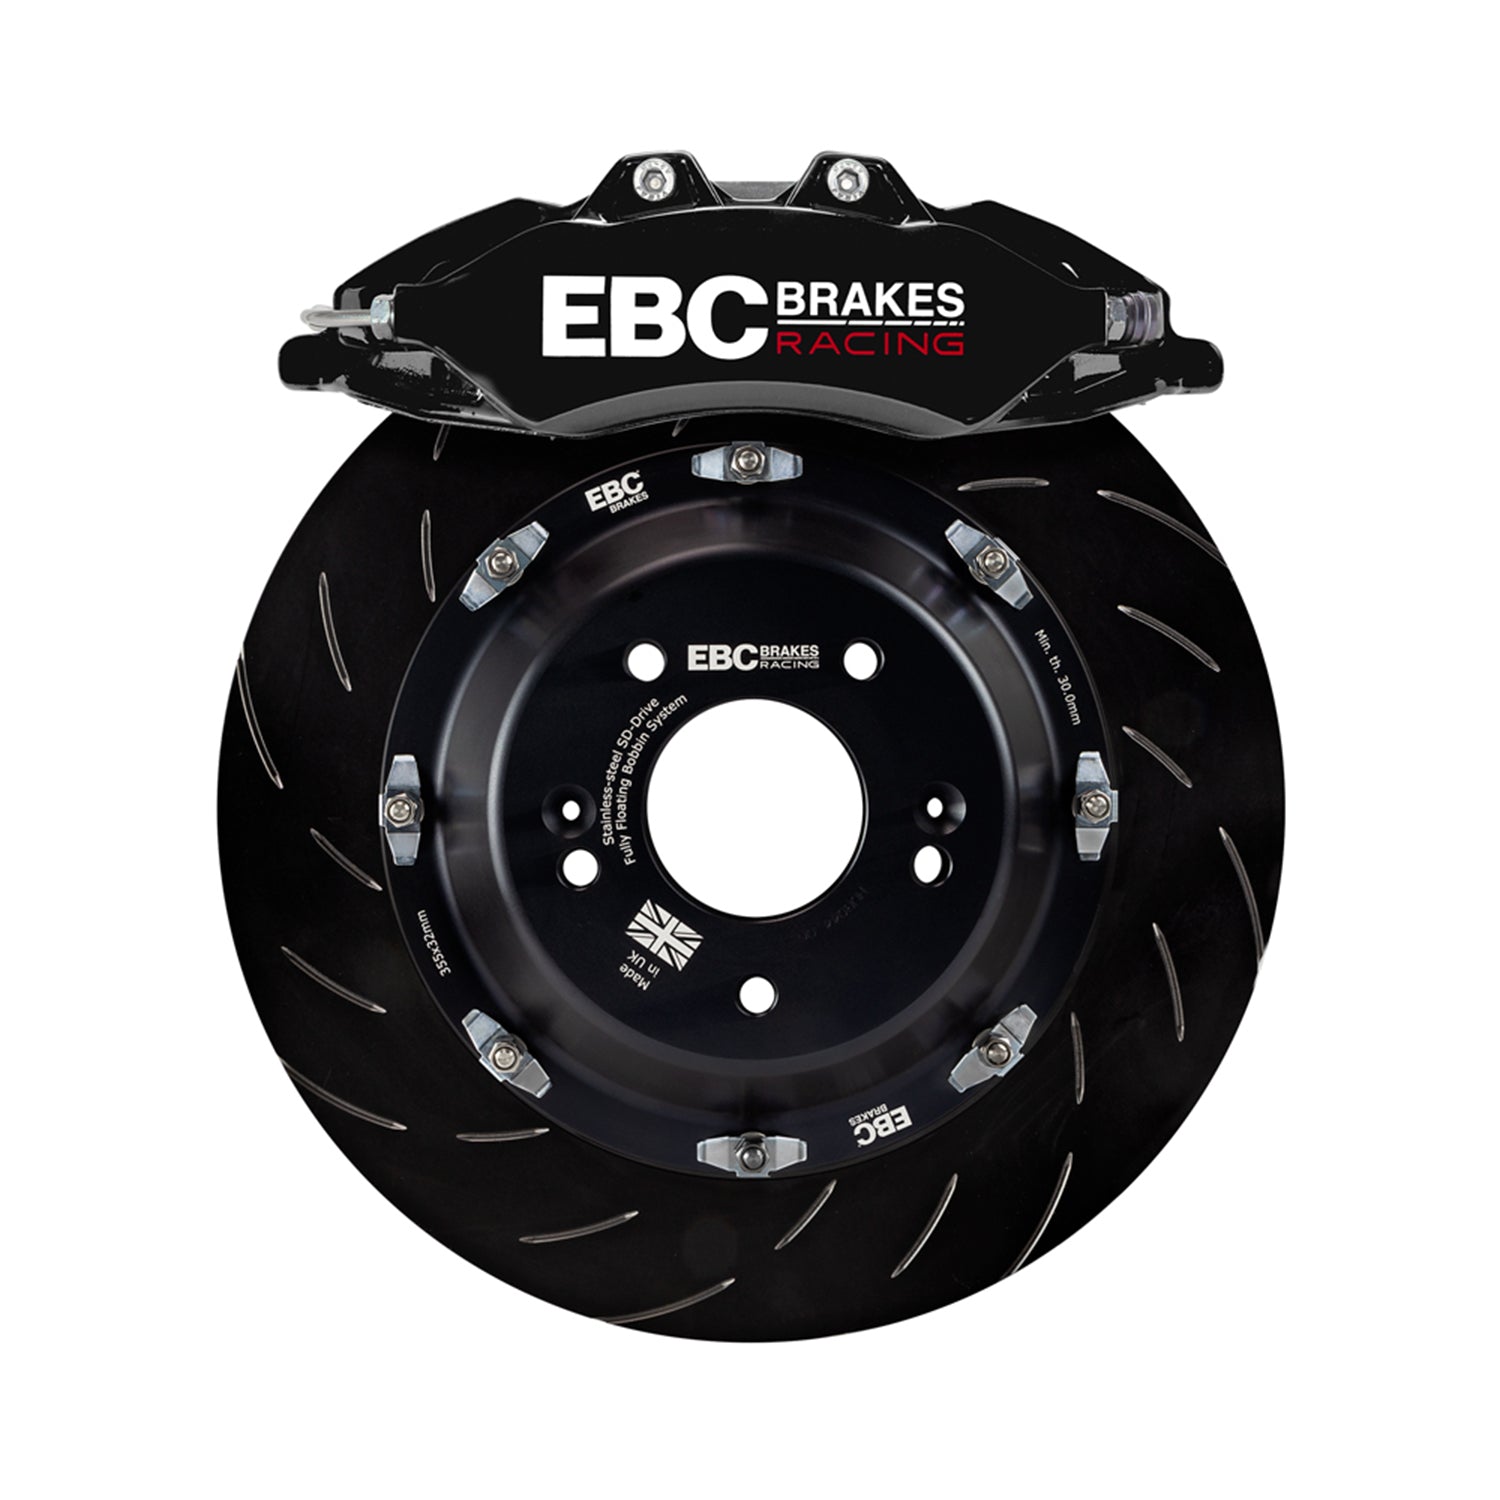 EBC Racing Big Brake Kit For BMW F80 M3, F82 M4 & F87 M2 In Black